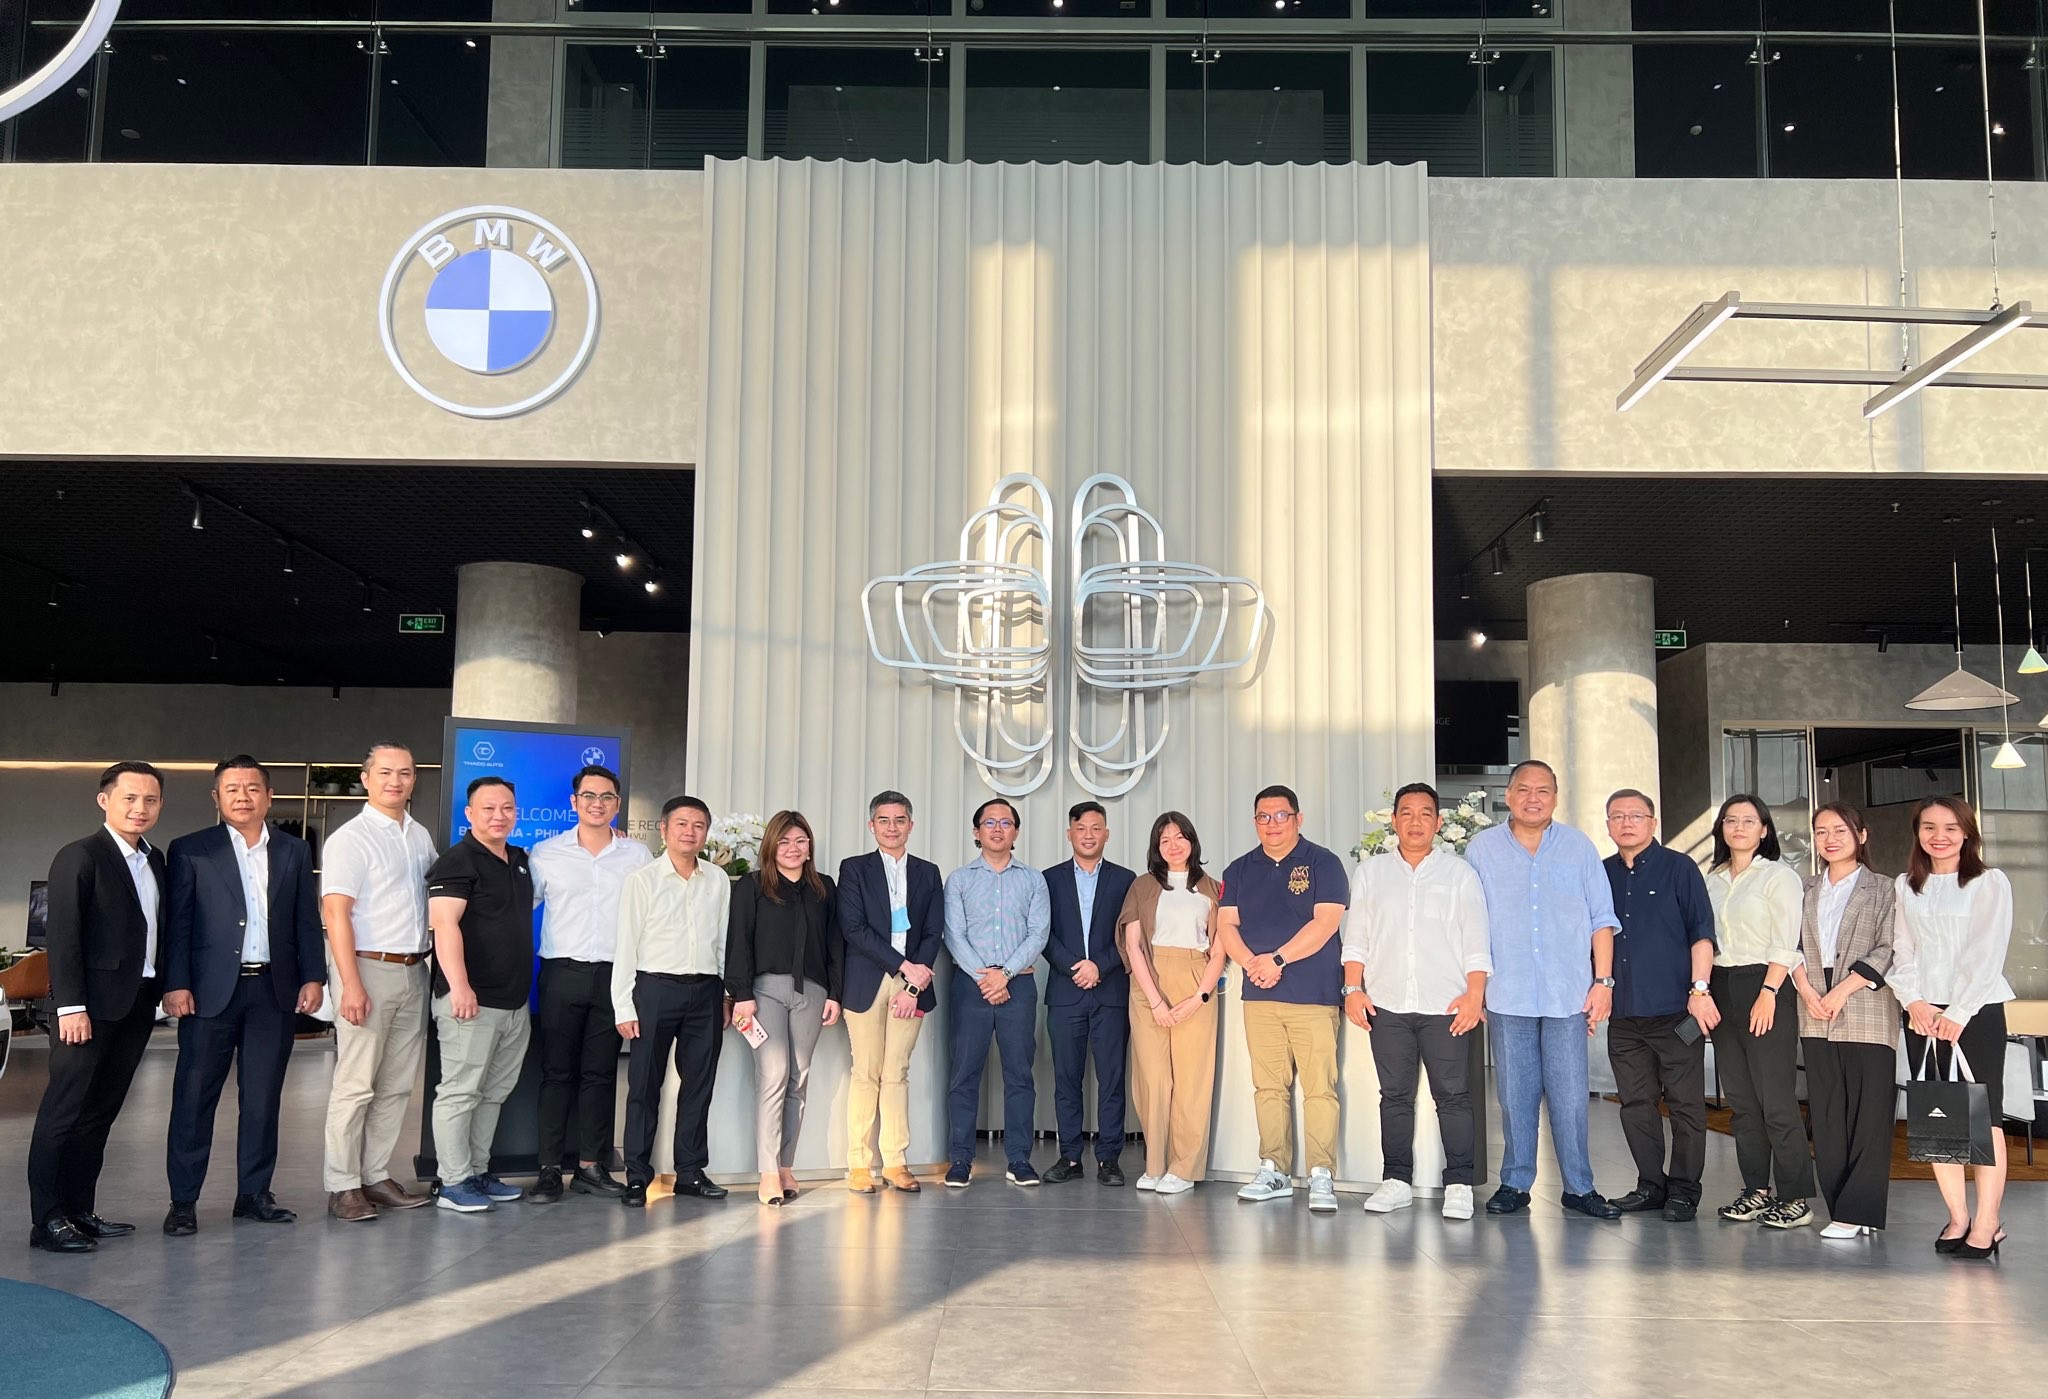 Đoàn công tác BMW Asia và đối tác Philippines thăm, làm việc tại BMW Bình Dương